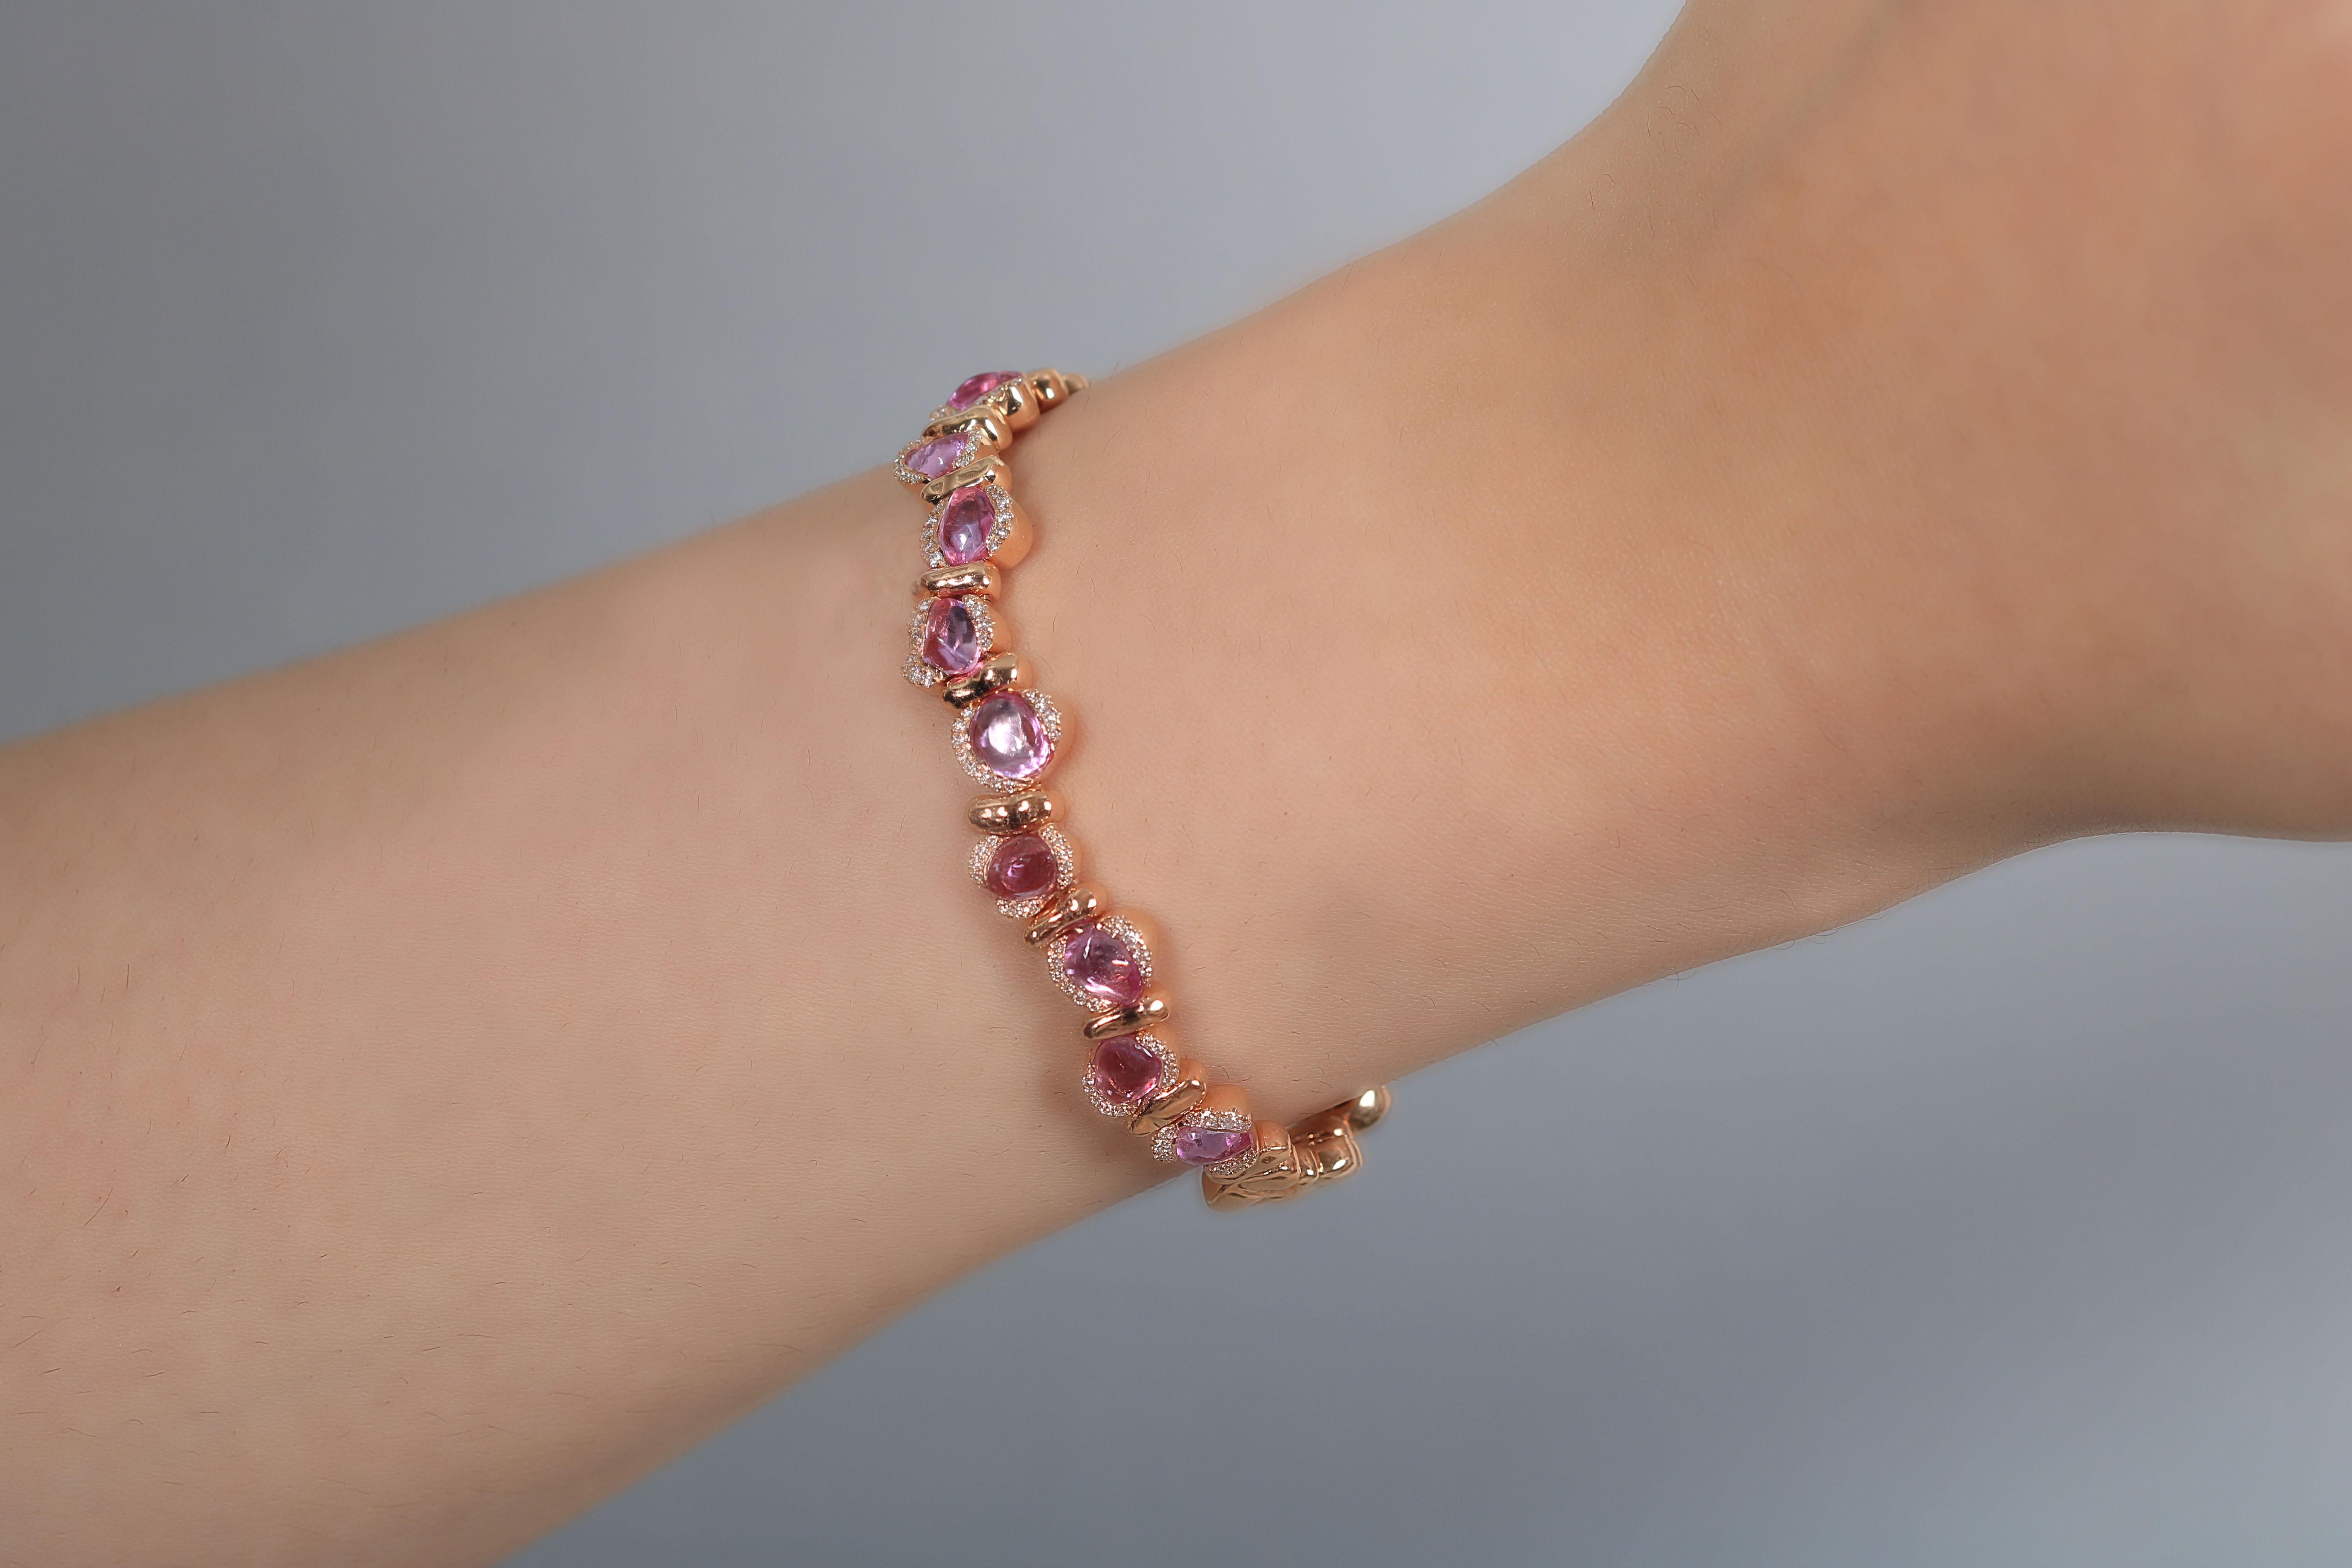 Un bracelet en or rose parfait, conçu pour être porté tous les jours. Avec de délicats petits saphirs entourés de diamants blancs pavés et de lignes organiques. Vous pouvez l'empiler avec d'autres bracelets ou avec votre montre préférée.

-Clarté du